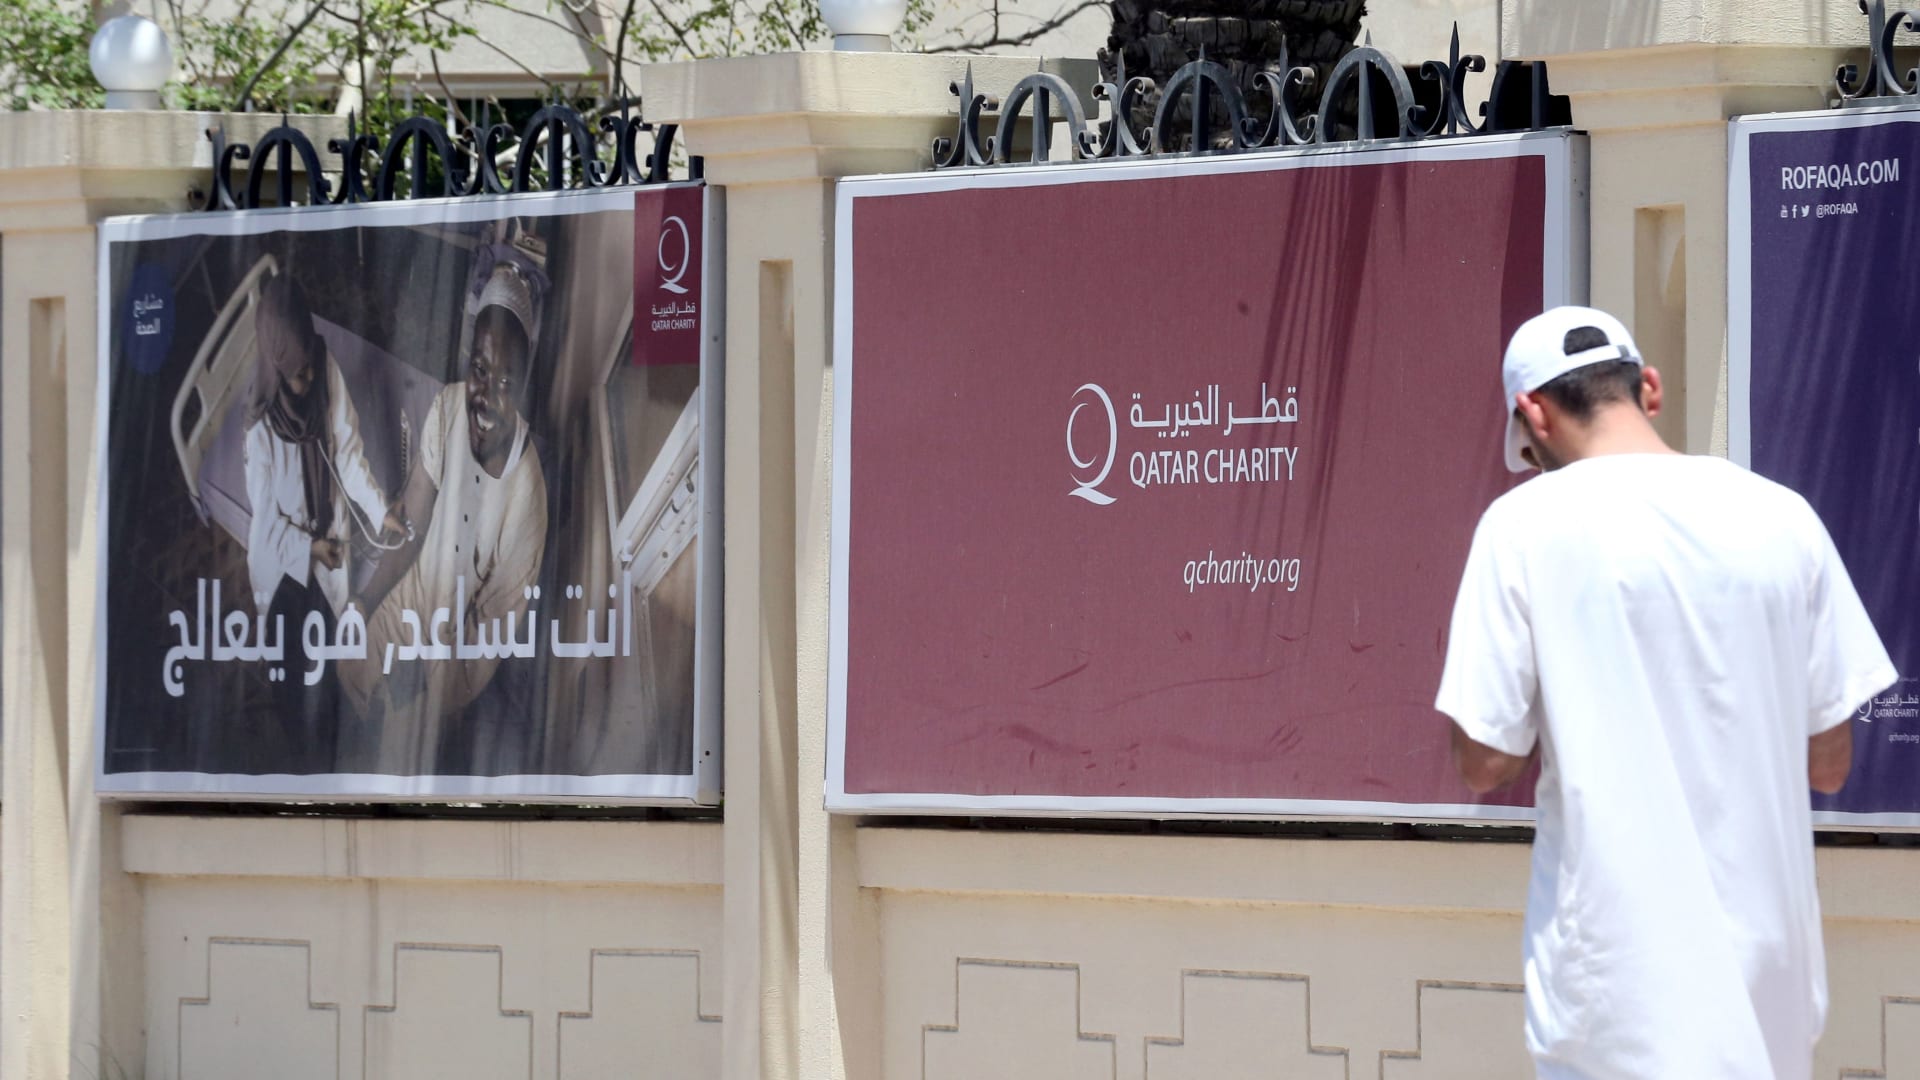 جمعية قطر الخيرية: أبرمنا 93 اتفاقية بـ126.3 مليون دولار مع منظمات دولية وإقليمية